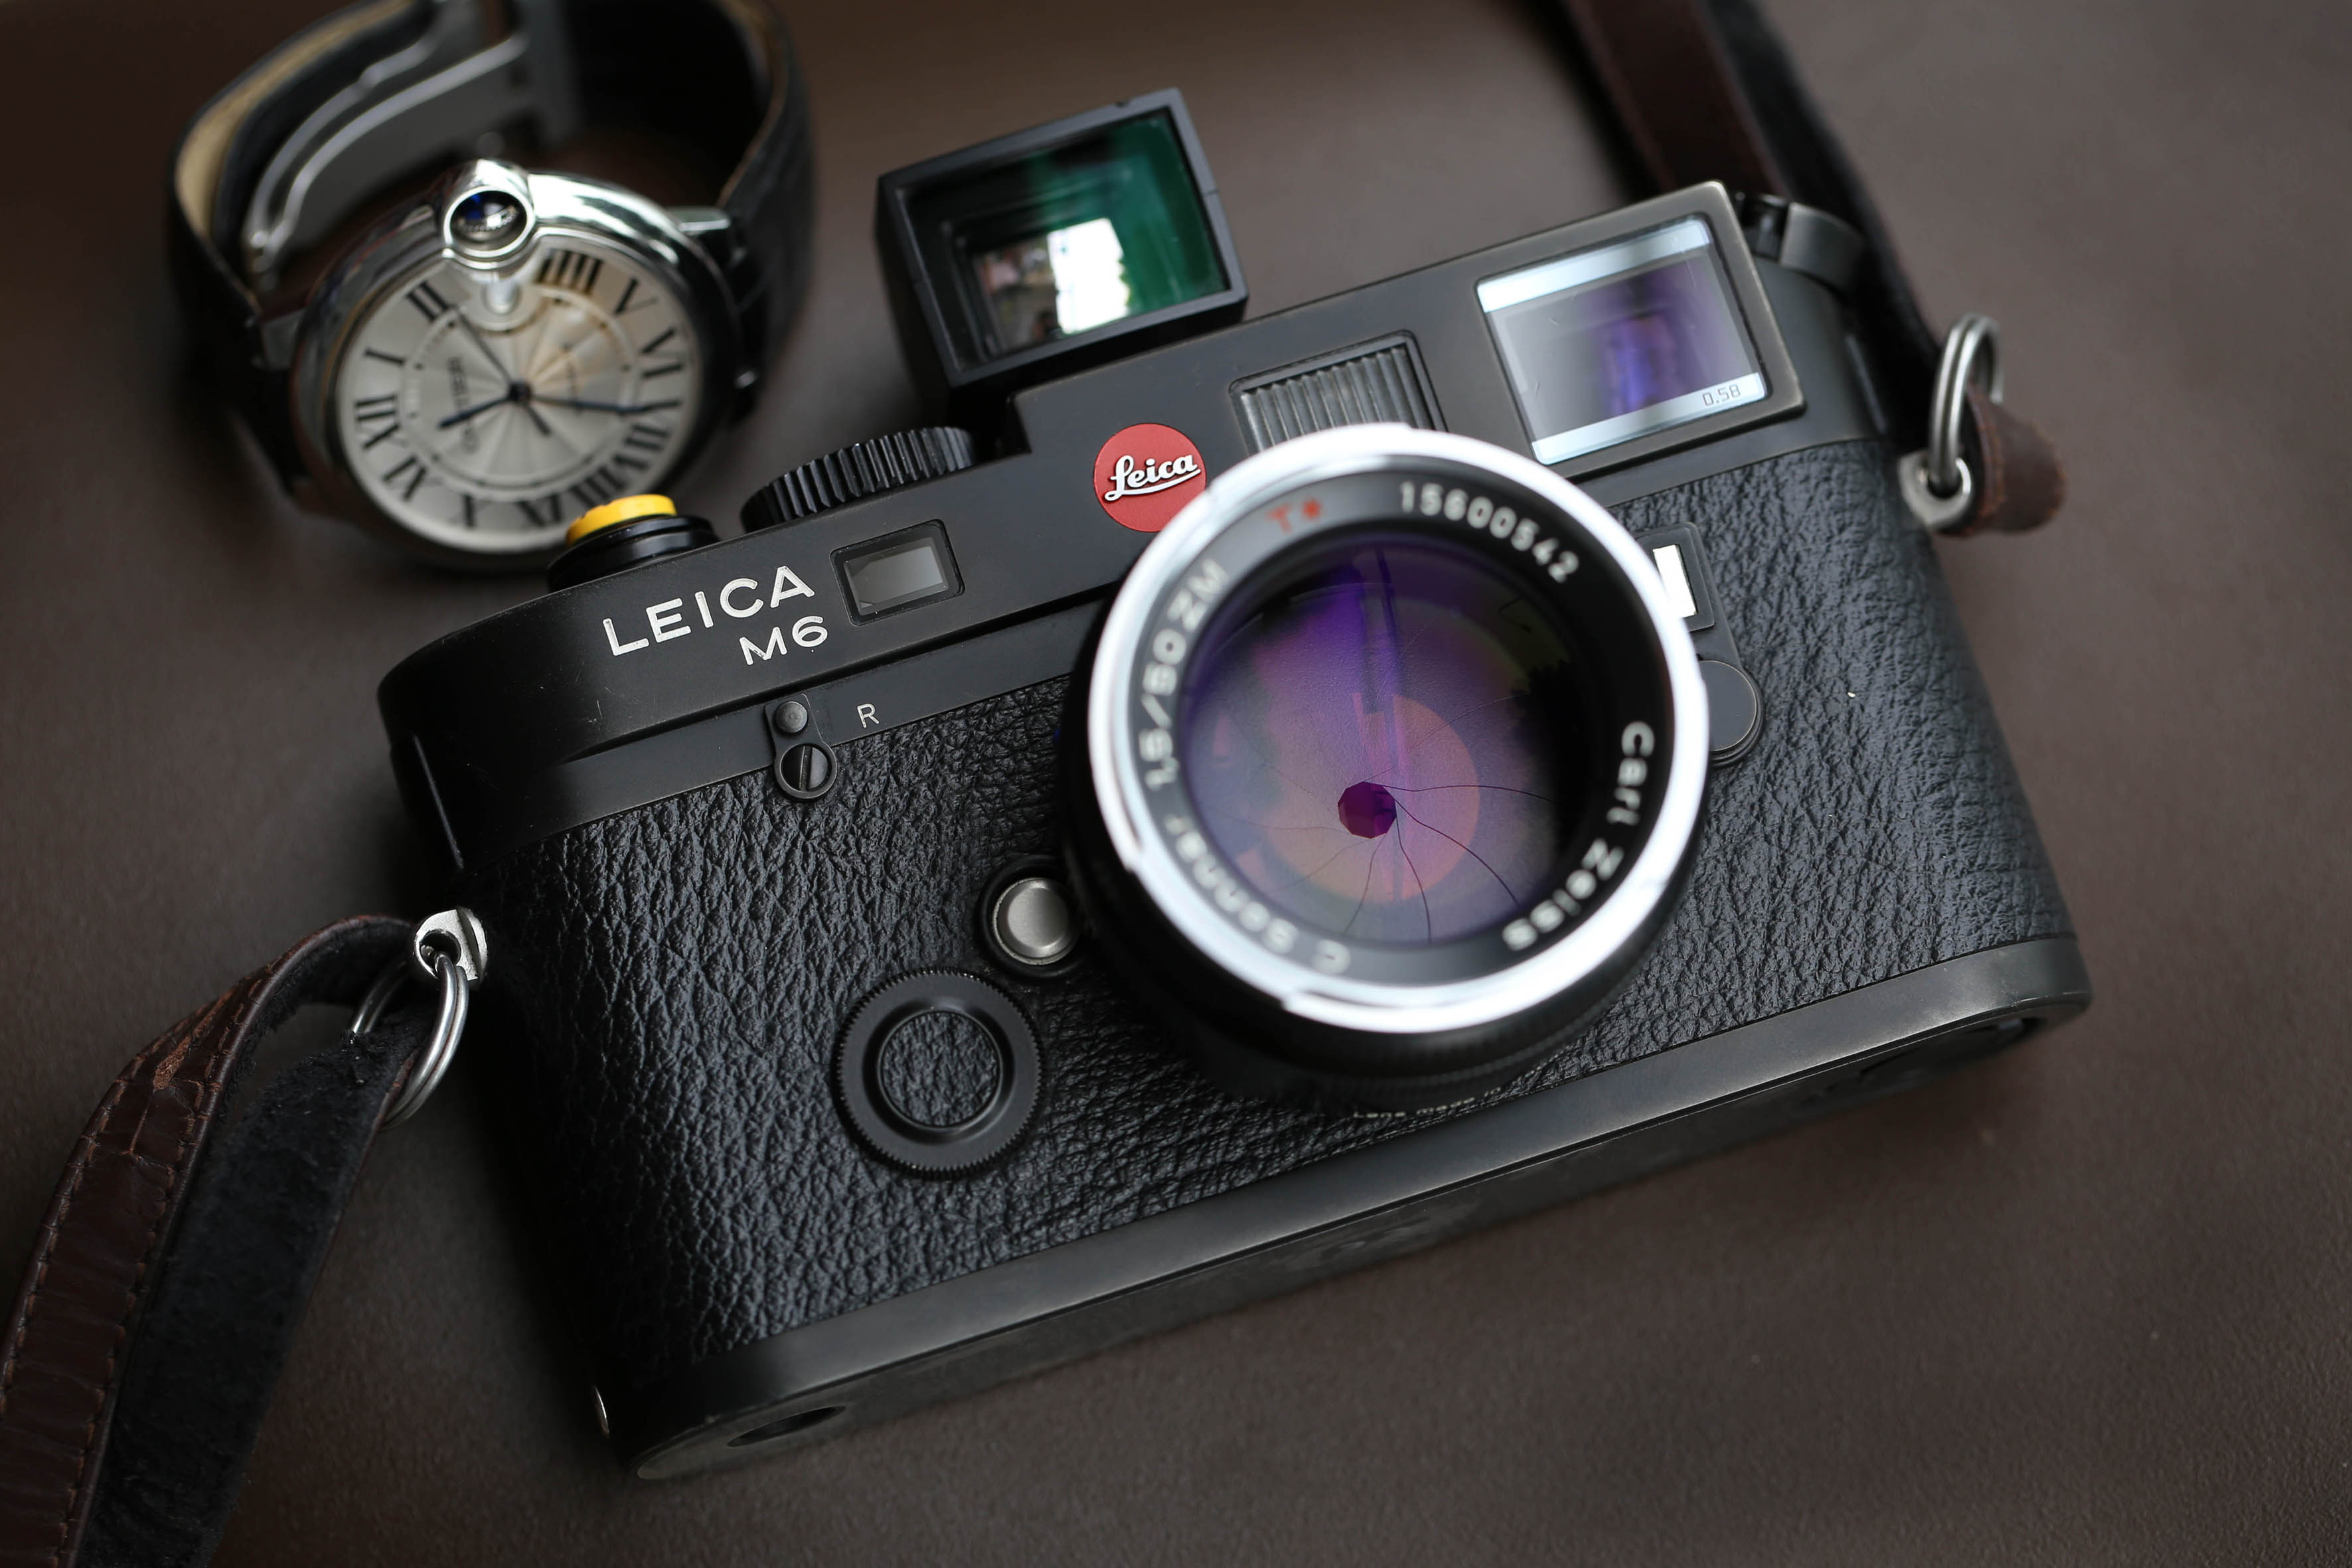 Leica M6 TTL 0.58 body